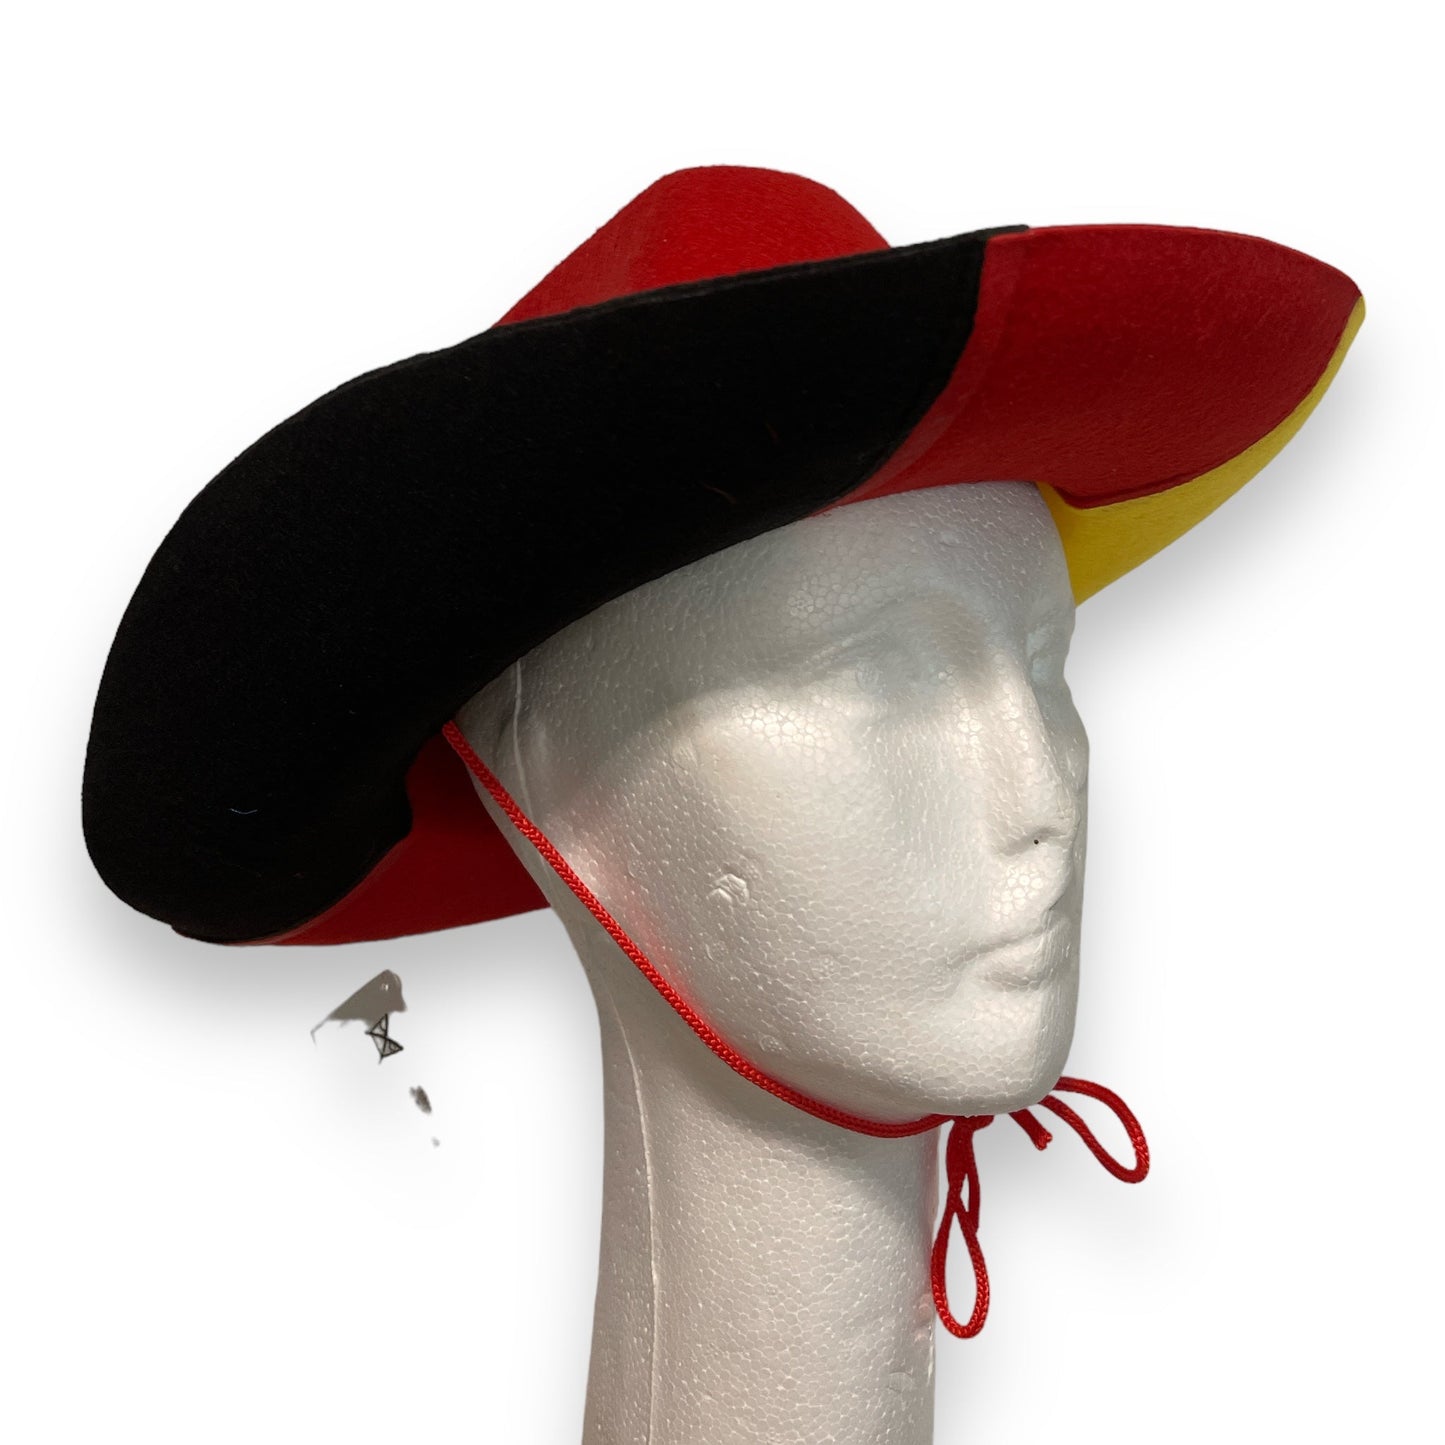 Timmy Toys - B017 - German Flag Style Cowboy Hat - 1 Piece